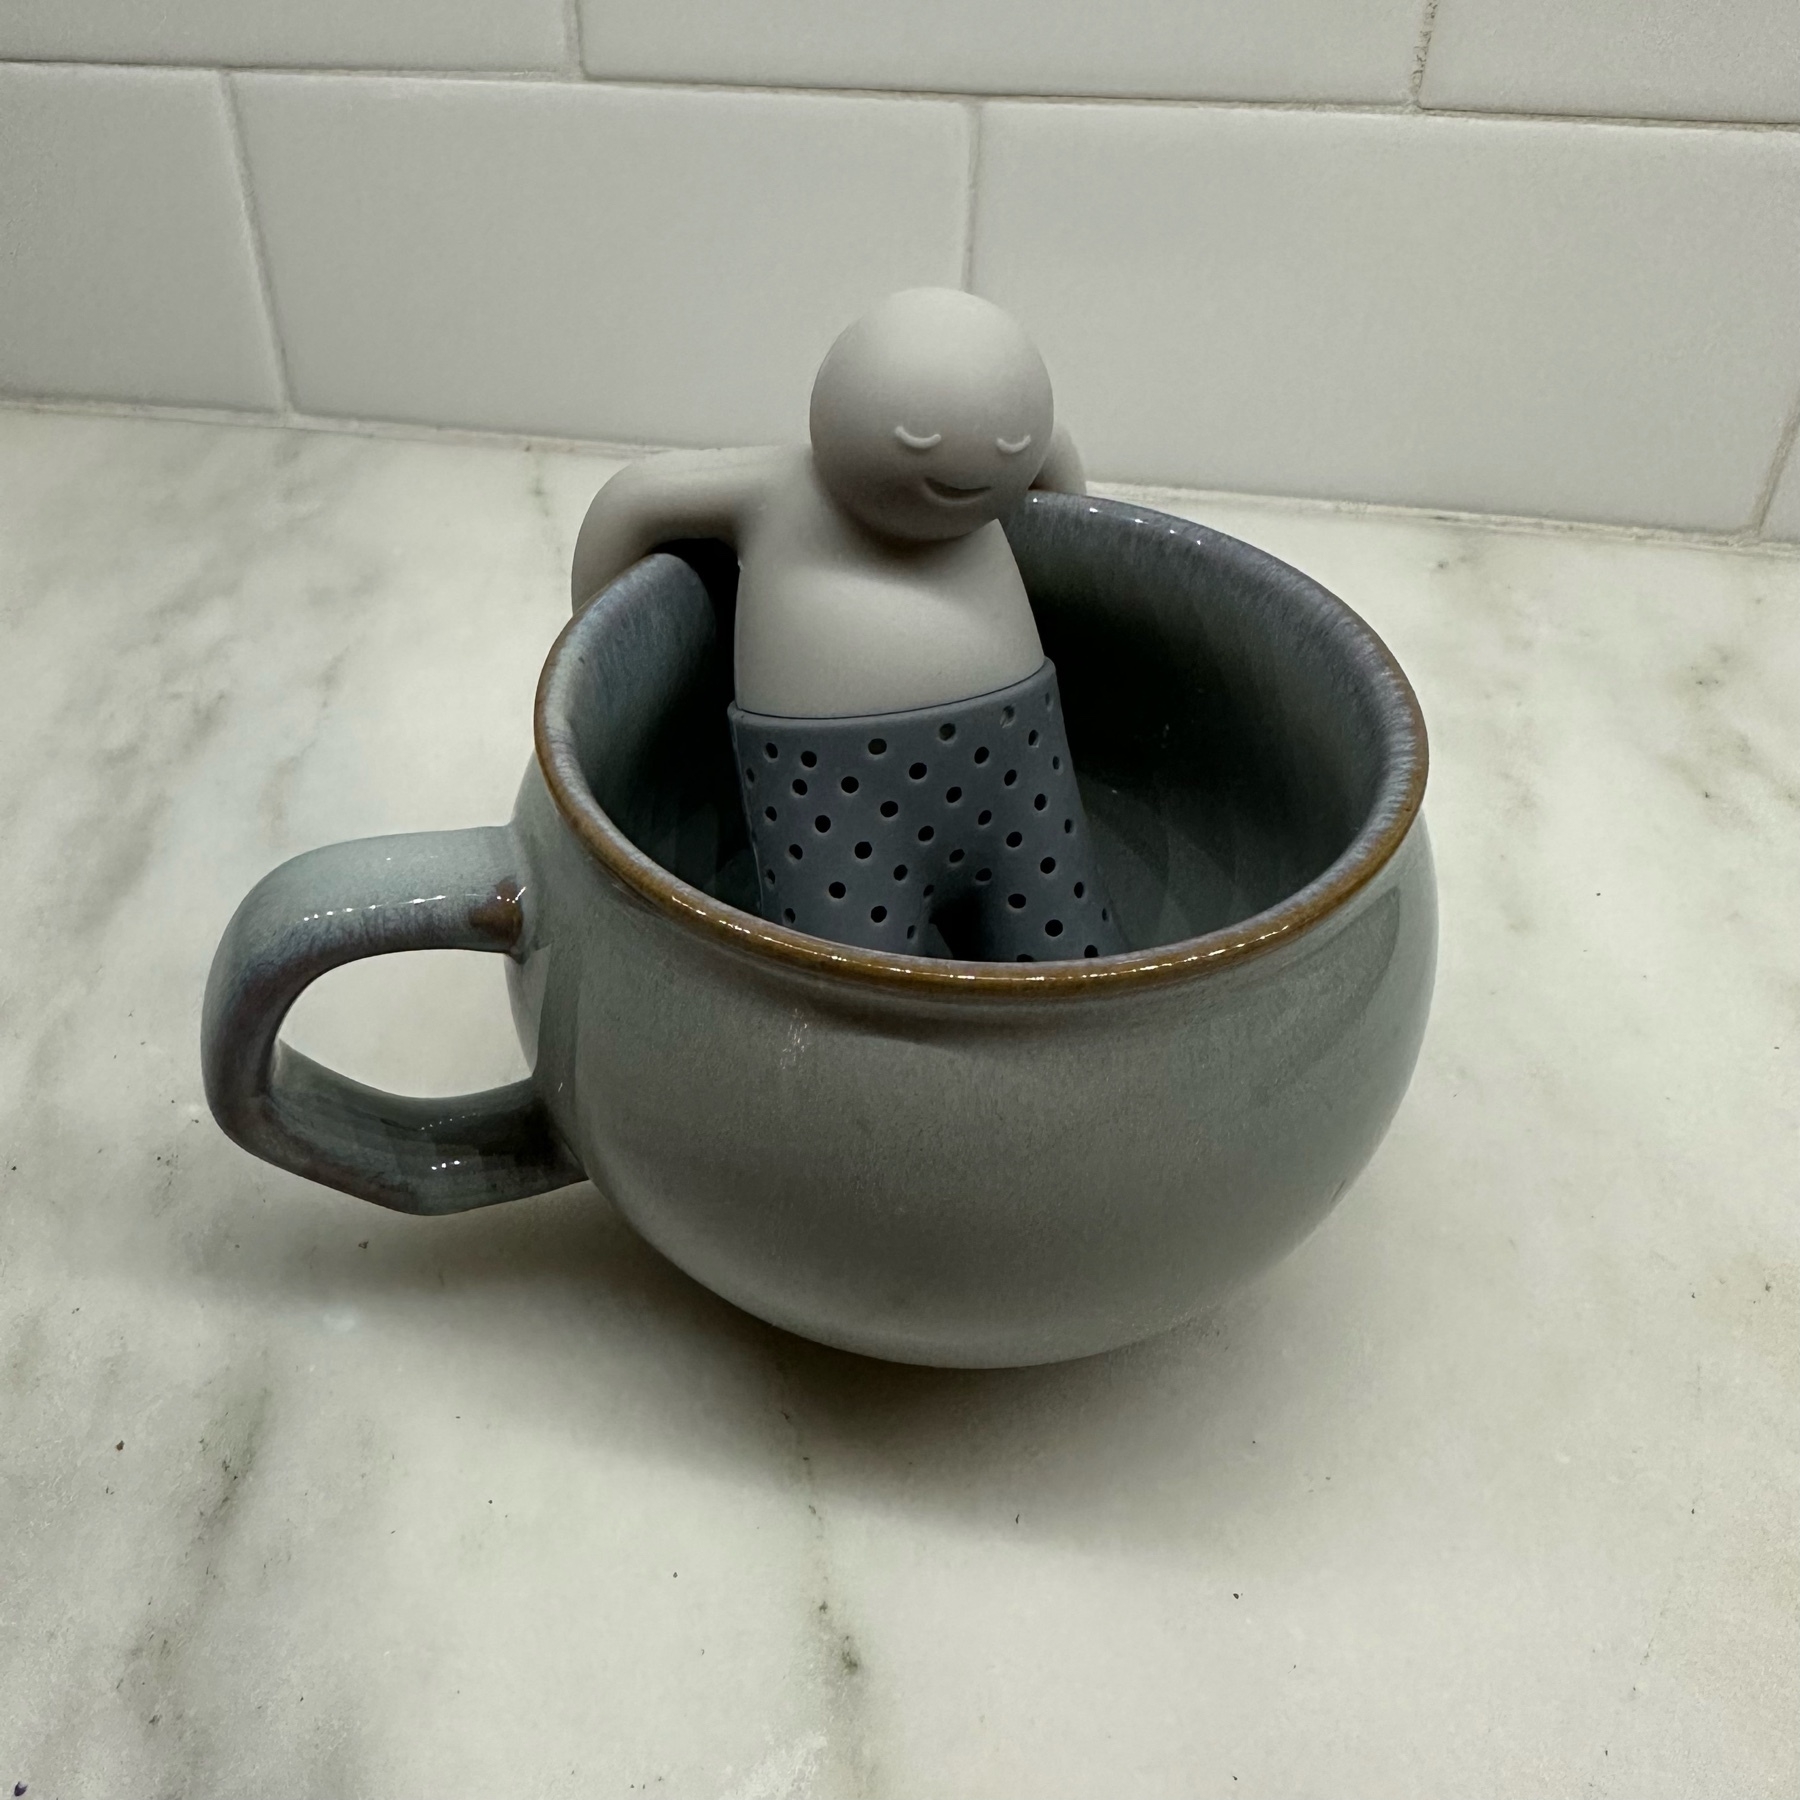 Reusable tea bag in a mug